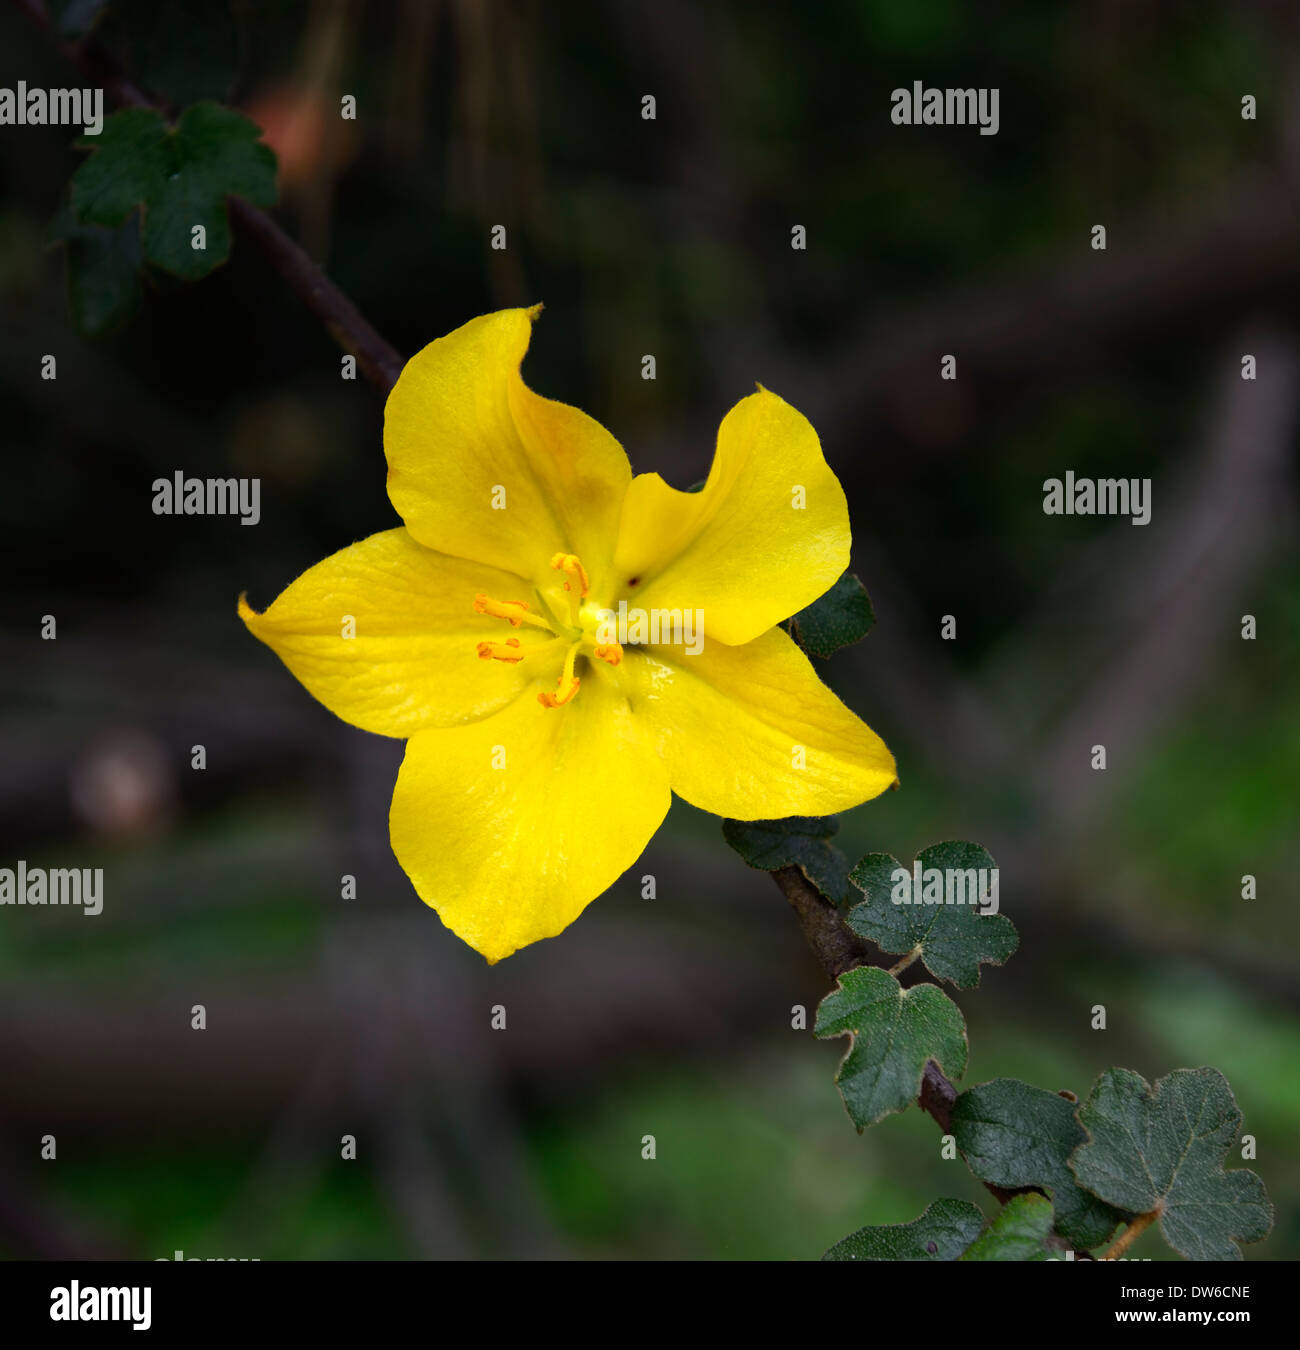 Fremontia fremontodendron california glory fleur fleurs jaunes odorantes parfumées floraison evergreen shrub flannelbush Banque D'Images